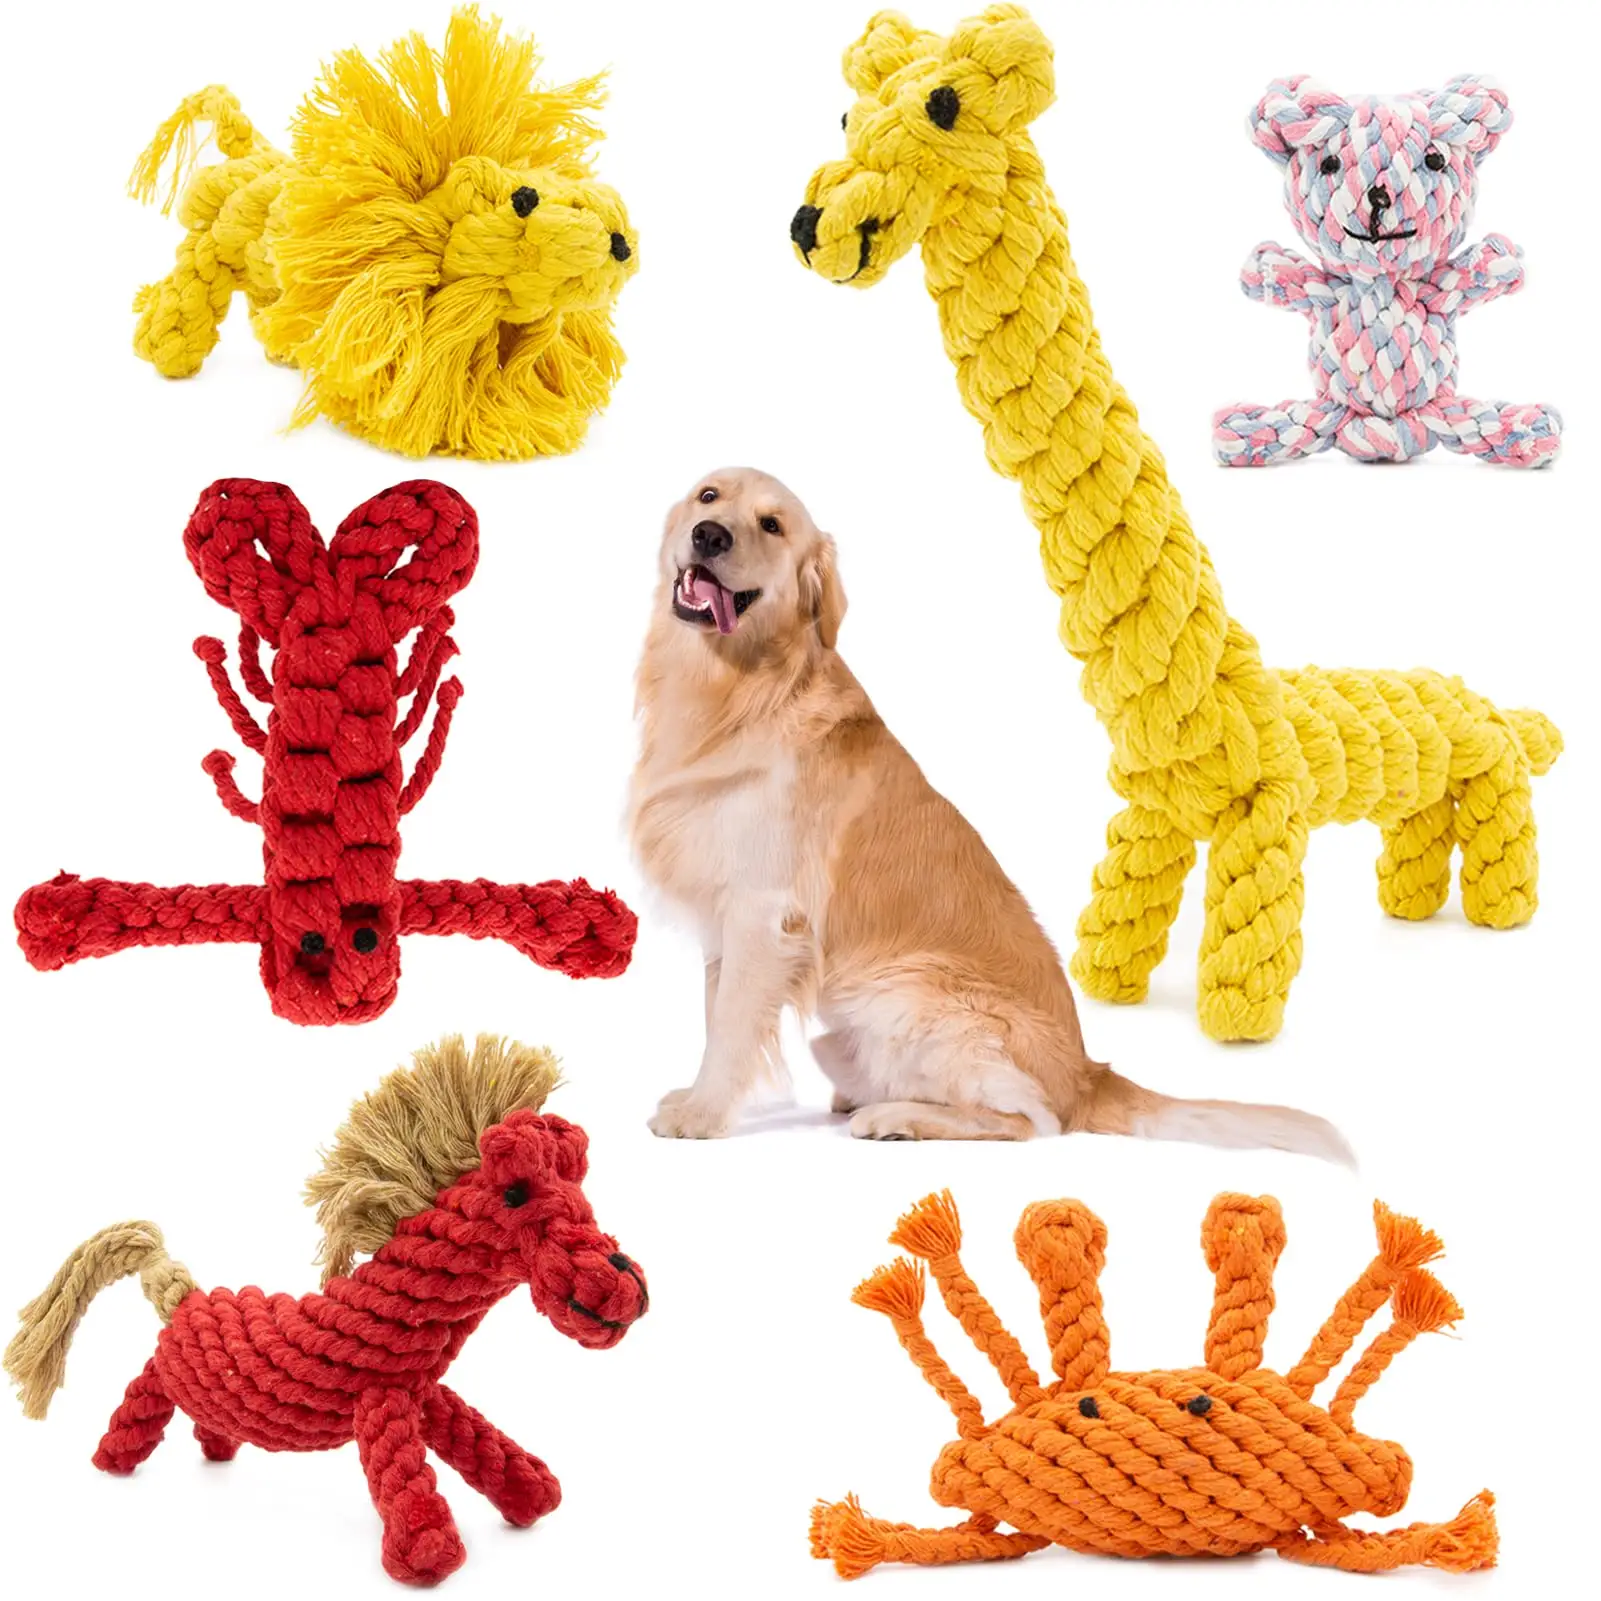 Mainan hewan peliharaan tahan aus dan gigitan, mainan hewan piaraan tali katun tenun tali kucing Molar mainan anjing grosir tali gigitan hewan piaraan